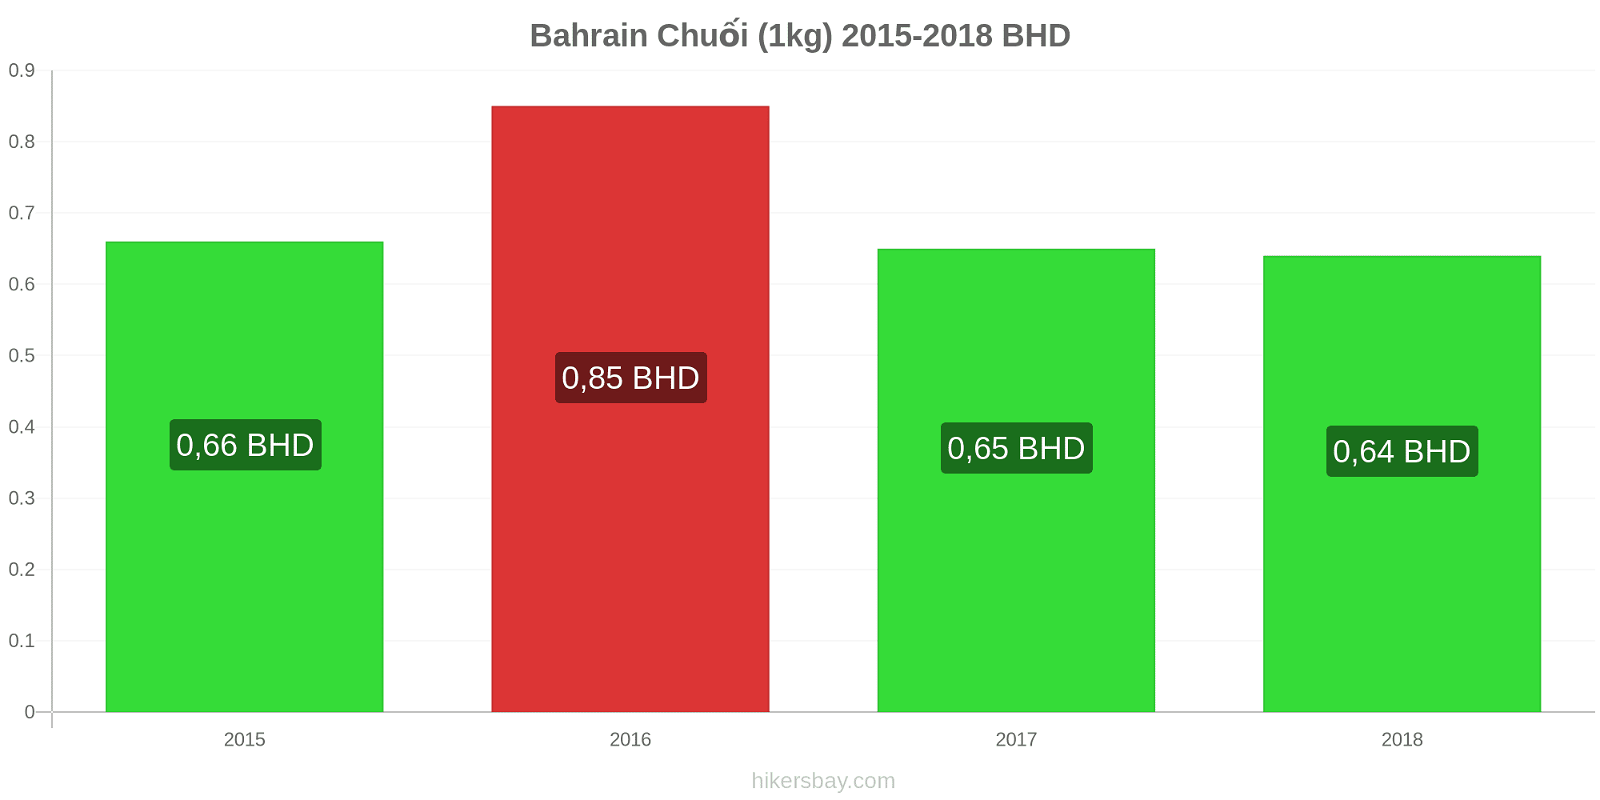 Bahrain thay đổi giá cả Chuối (1kg) hikersbay.com